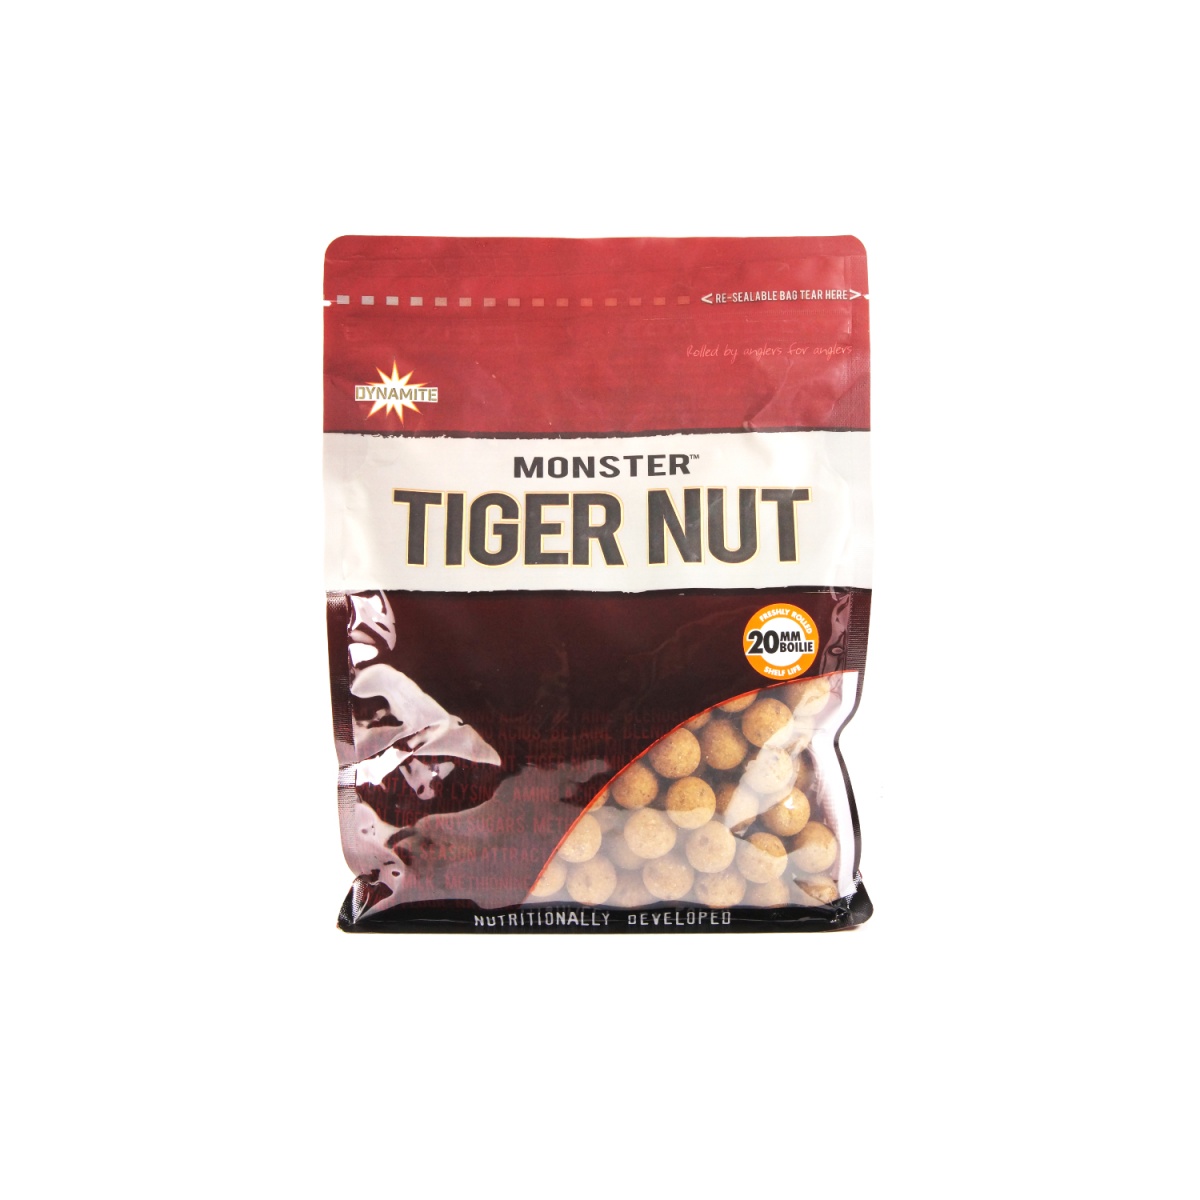 NEW DynamiteBaits Monster Tiger Nut Boilie - Kulki Proteinowe 20 mm / 1kg rozmiar / opakowanie